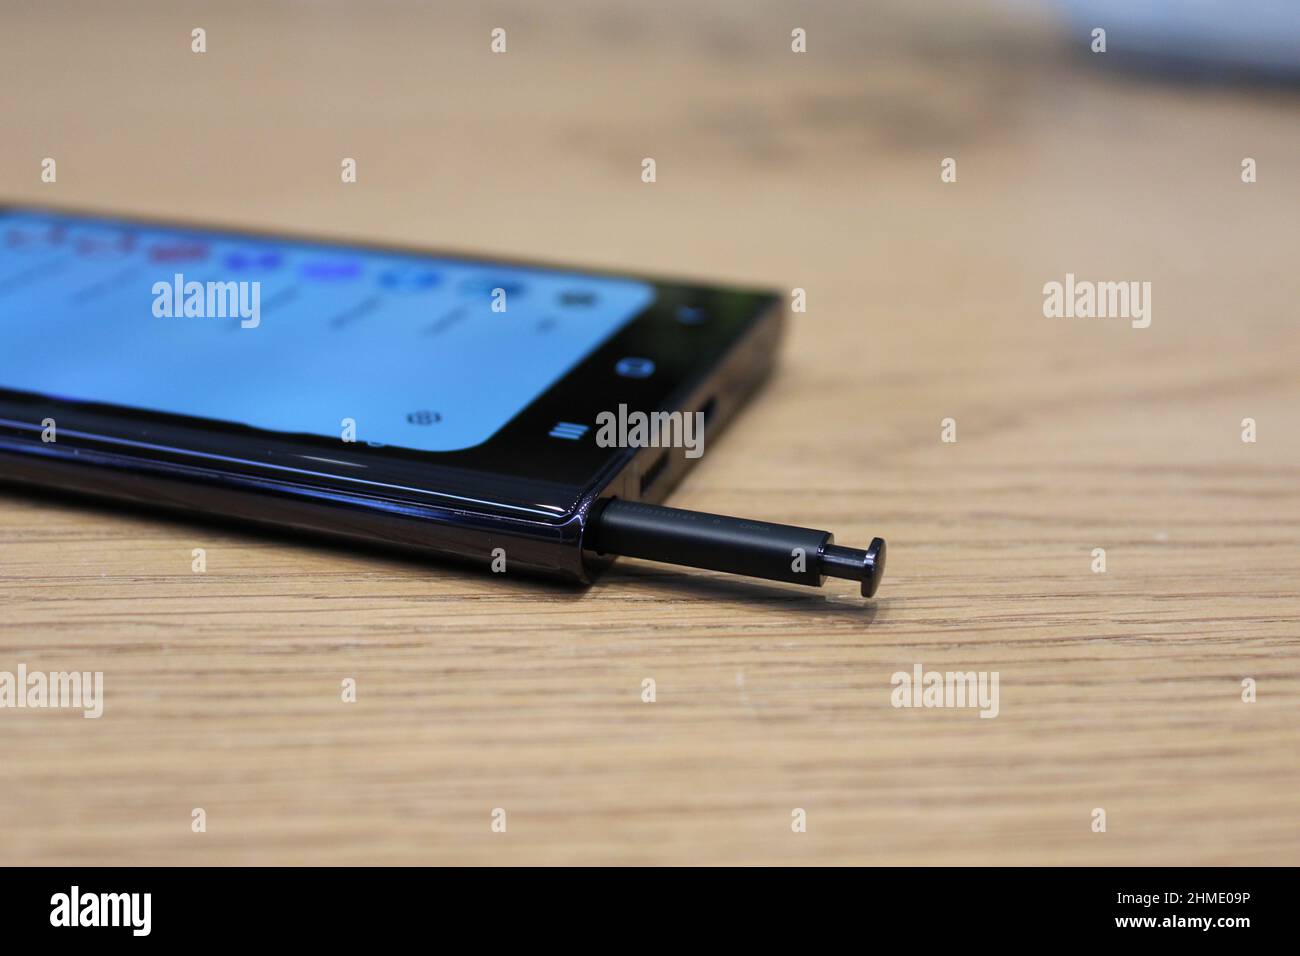 Das neue Samsung Galaxy S22 Ultra, eine der neuen Serie von Handys von der Firma vorgestellt. Bilddatum: Mittwoch, 9. Februar 2022. Stockfoto